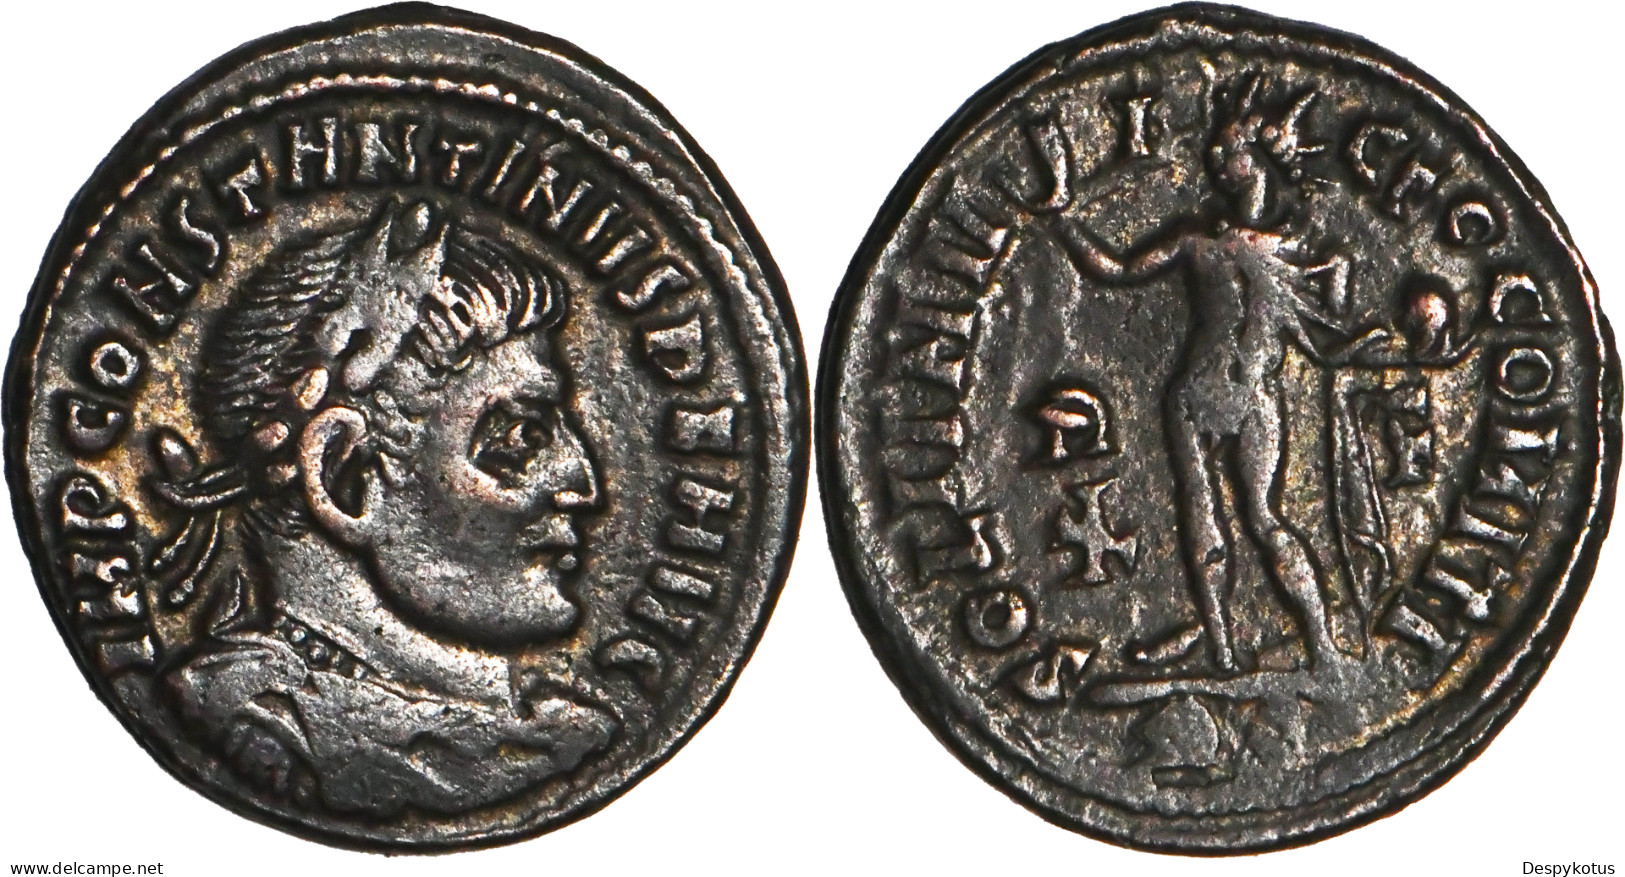 ROME - Centenionalis - CONSTANTIN I - SOLI INVICTO - ROME (RP) - 317 AD - RIC.27 - 19-142 - El Impero Christiano (307 / 363)